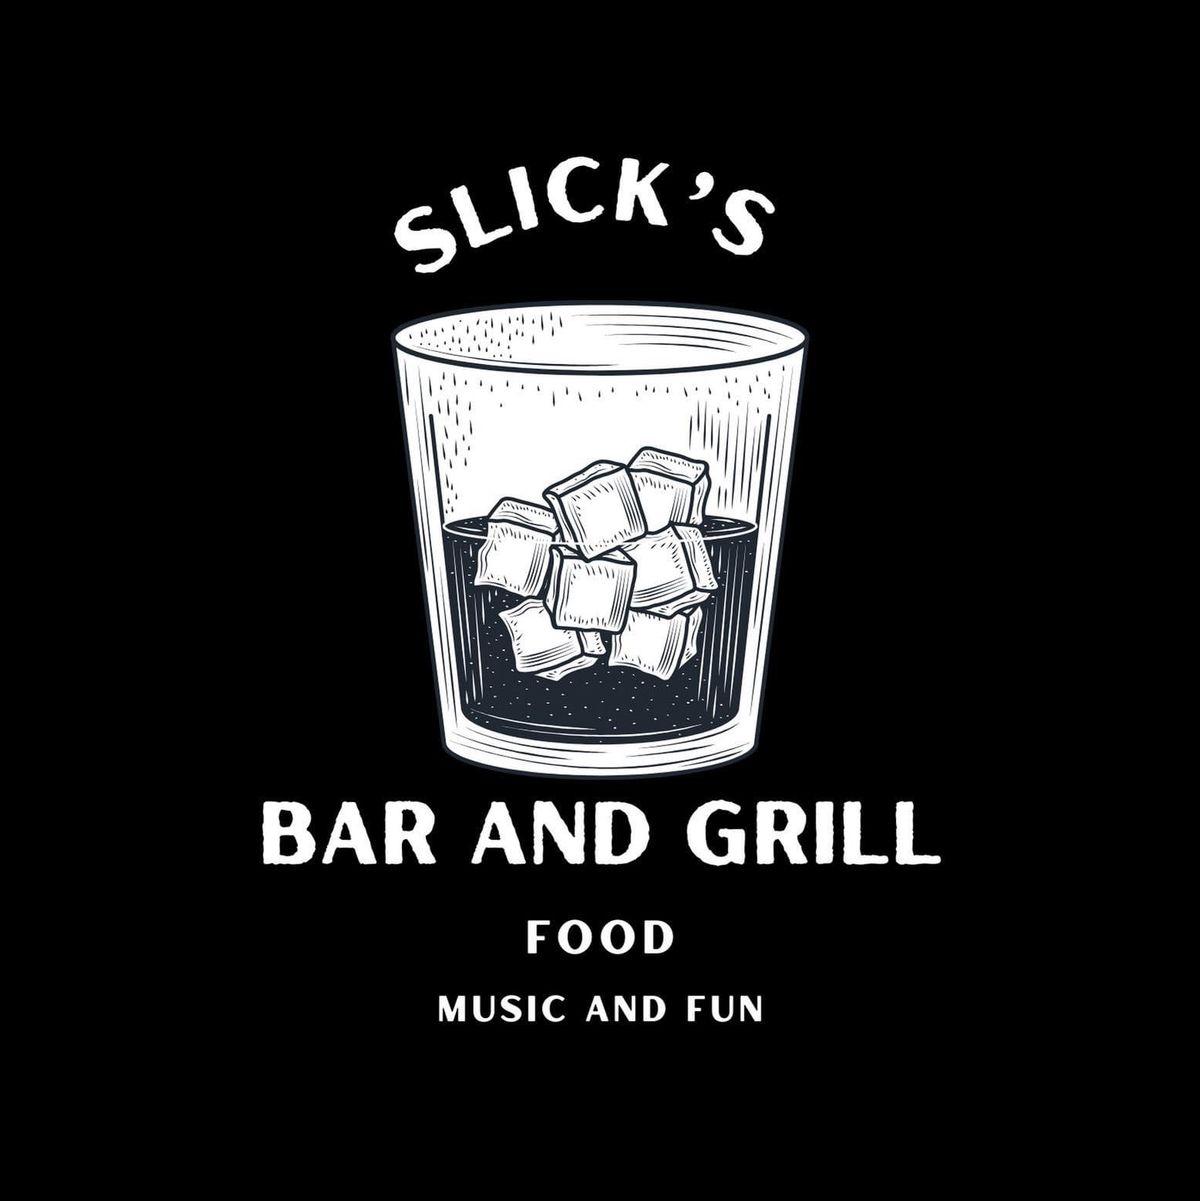 Rachel at Slick\u2019s Bar and Grill!